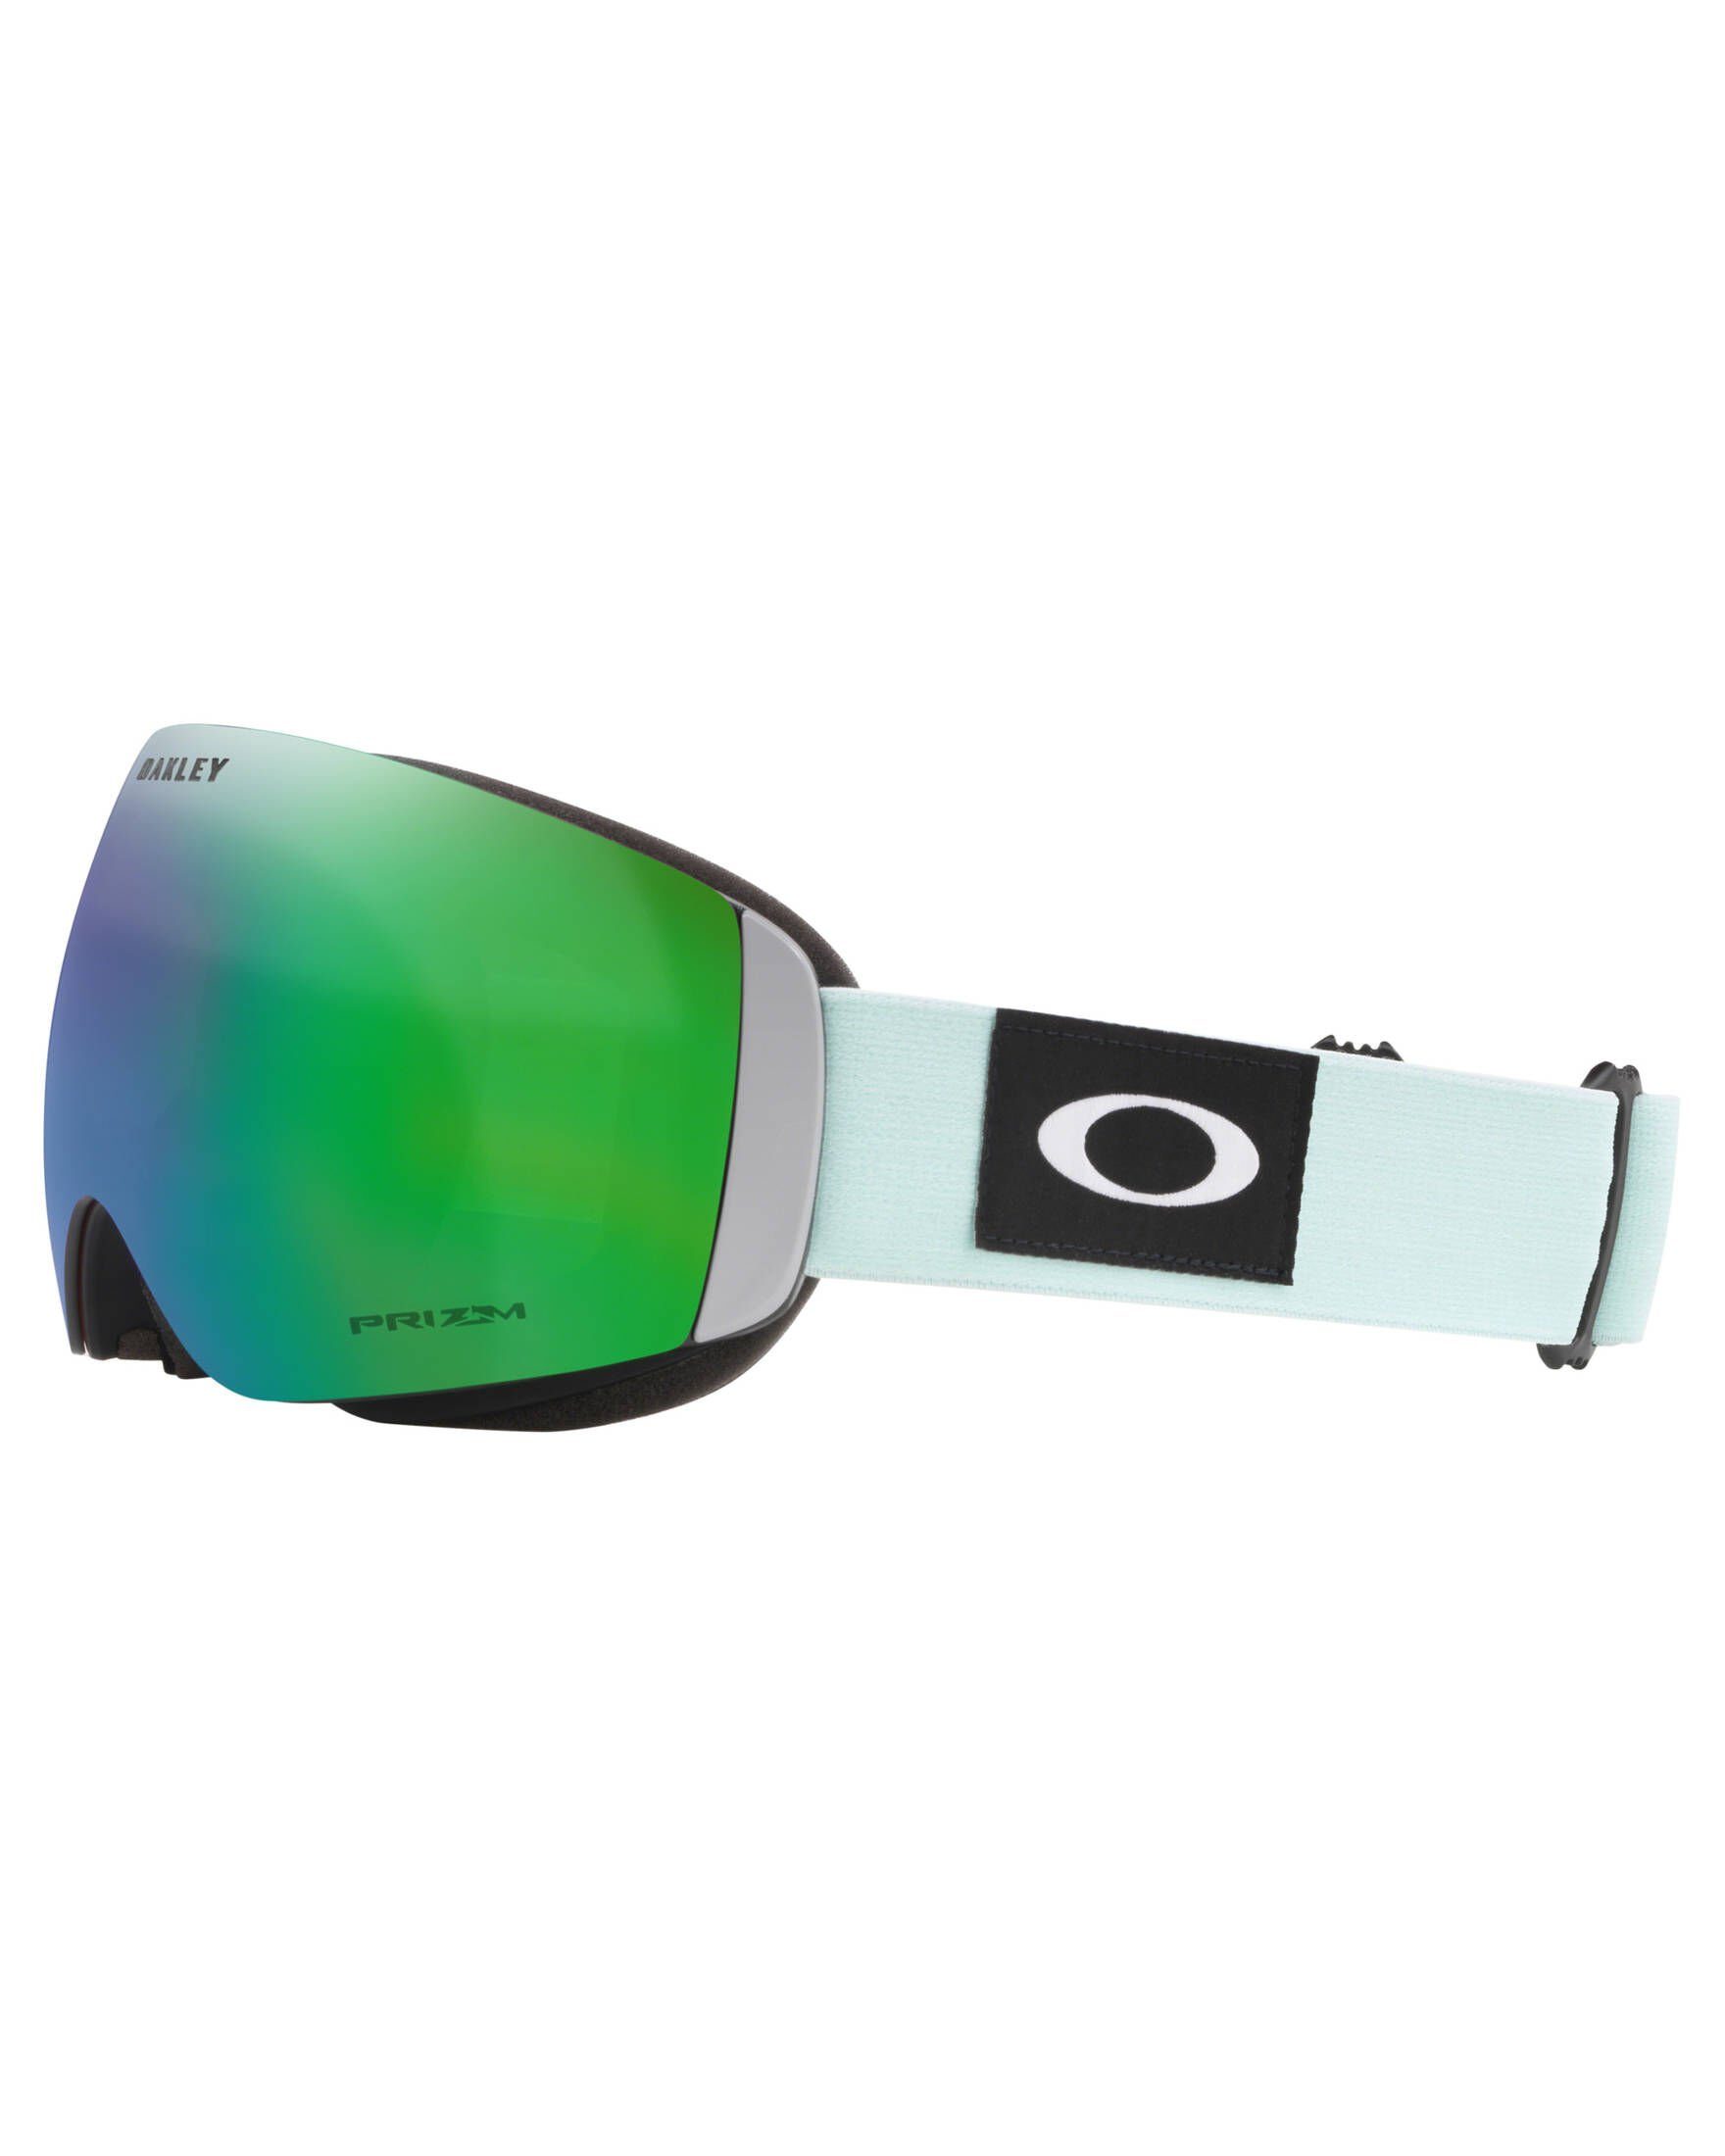 Oakley Skibrille Ski- und Snowboardbrille "Flight Deck"